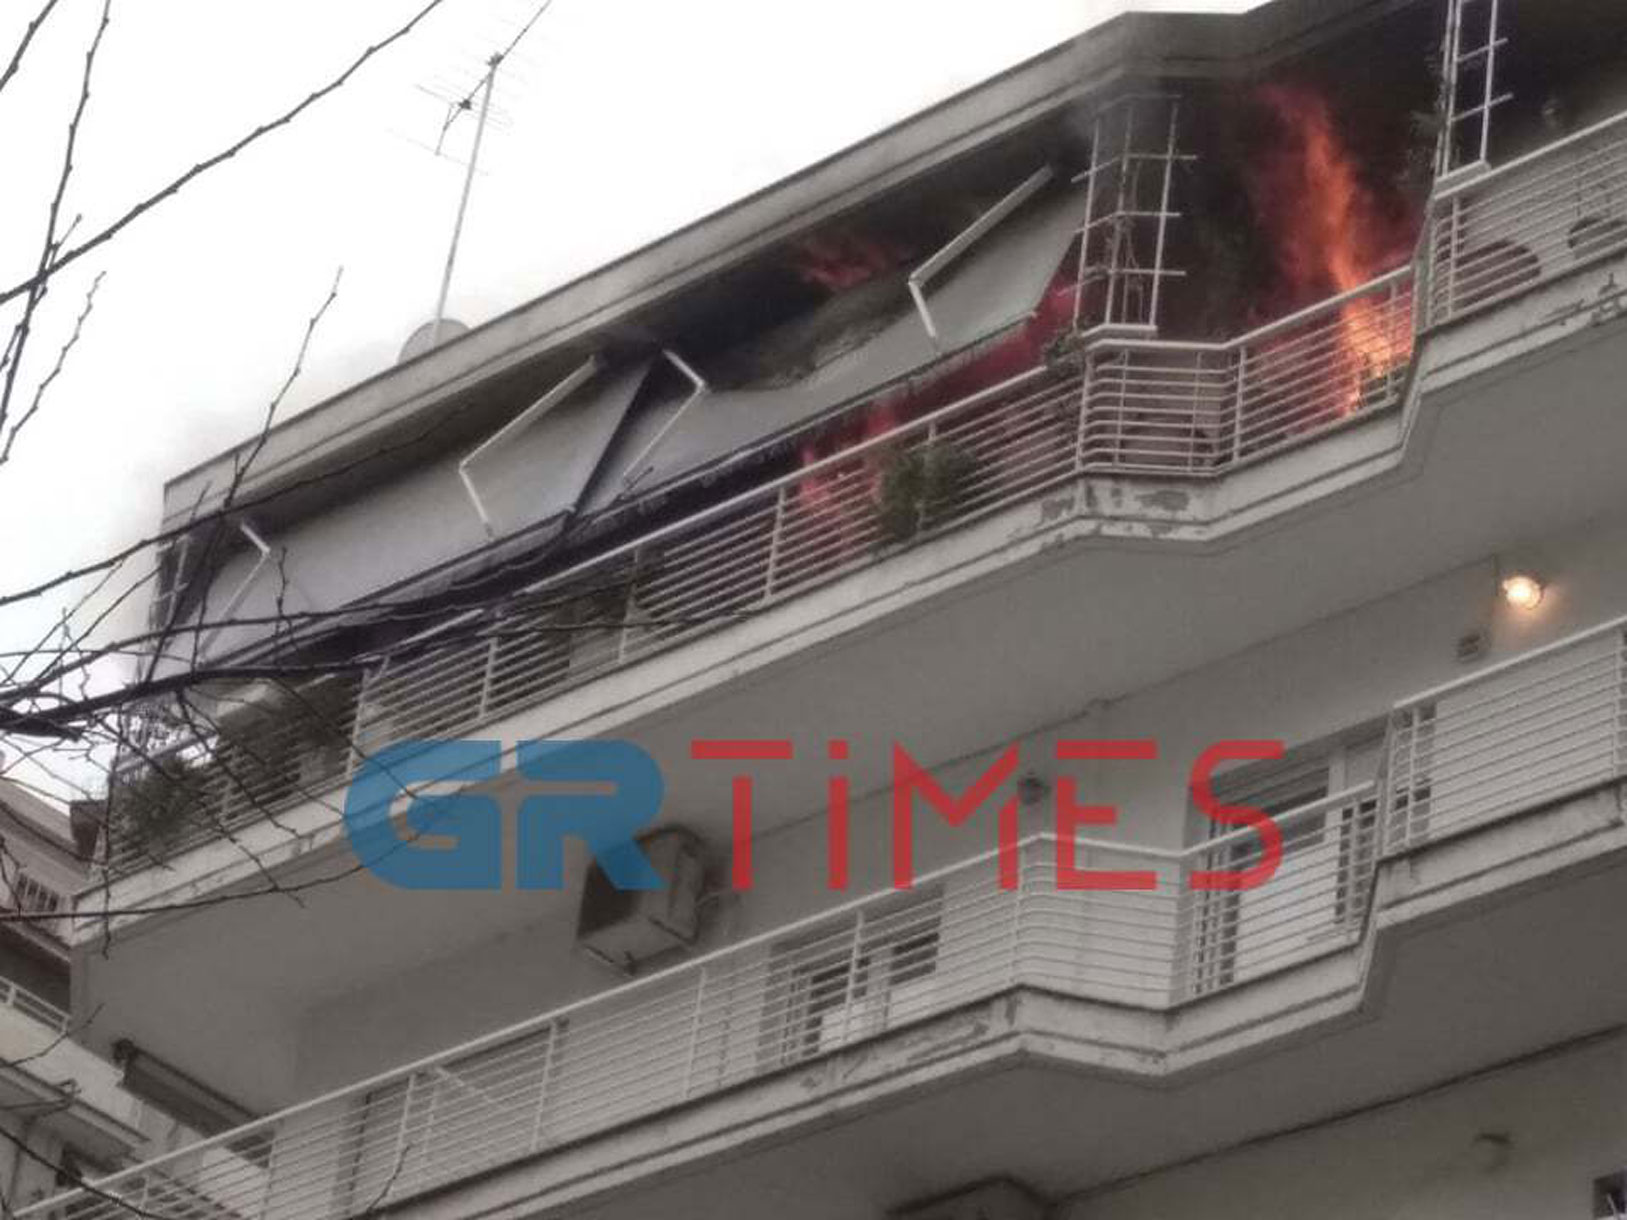 Μεγάλη φωτιά σε διαμέρισμα στη Θεσσαλονίκη